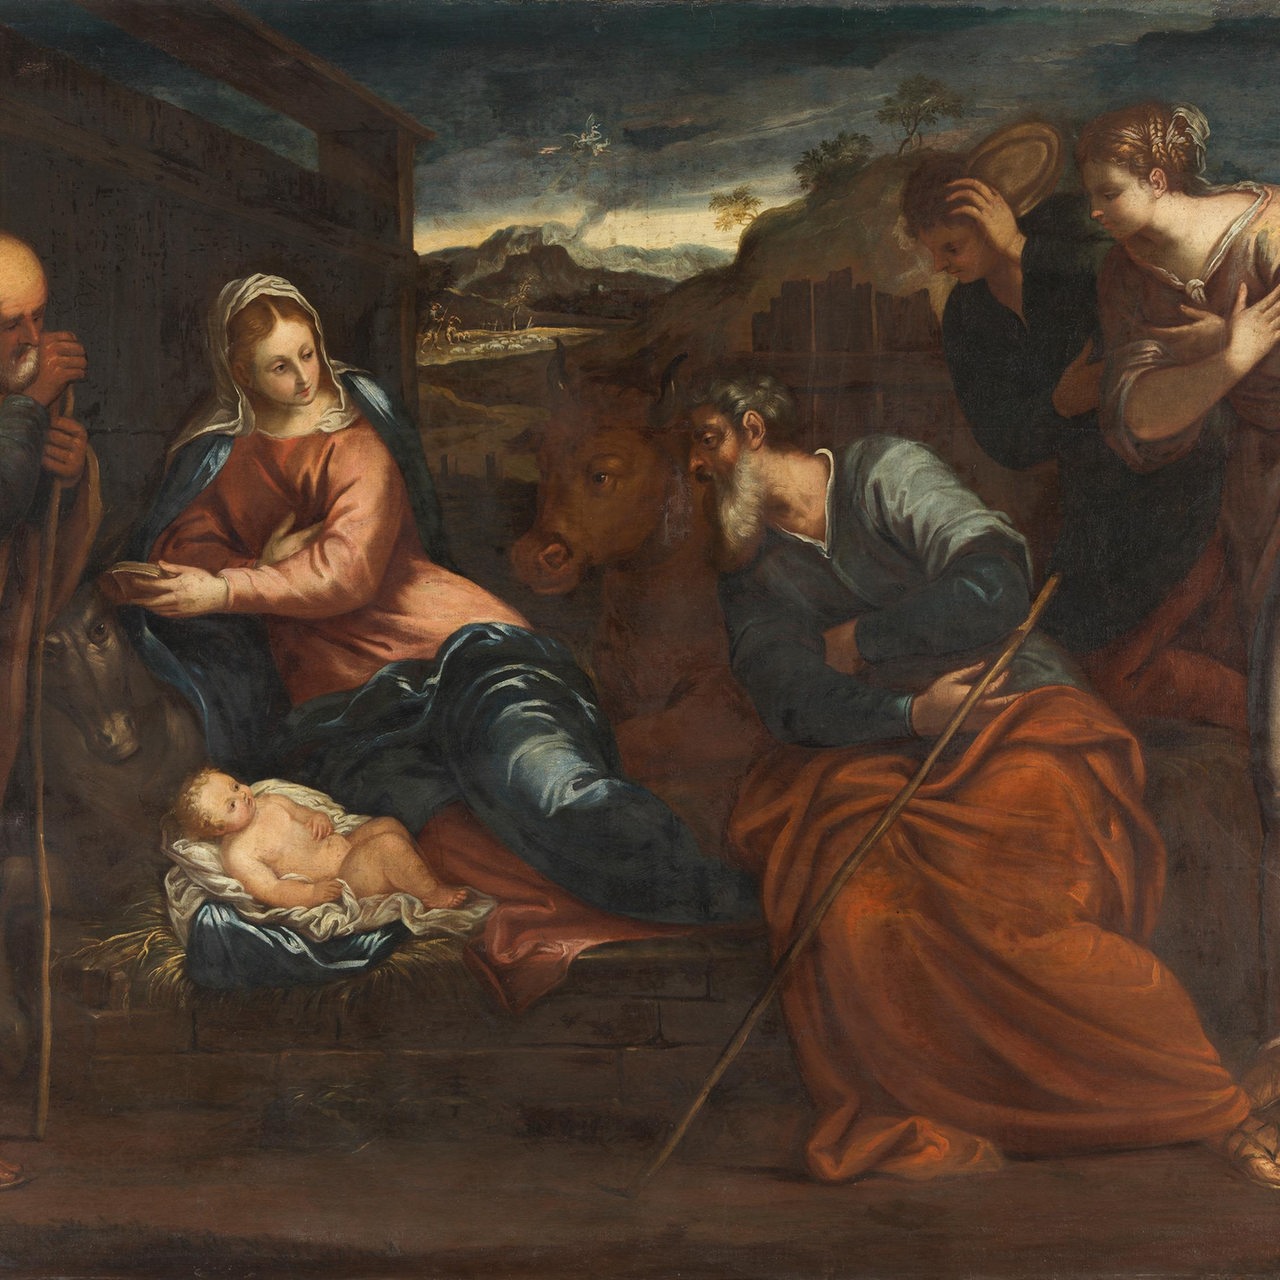 Gemälde von Jacopo Tintoretto "Anbetung durch die Hirten"